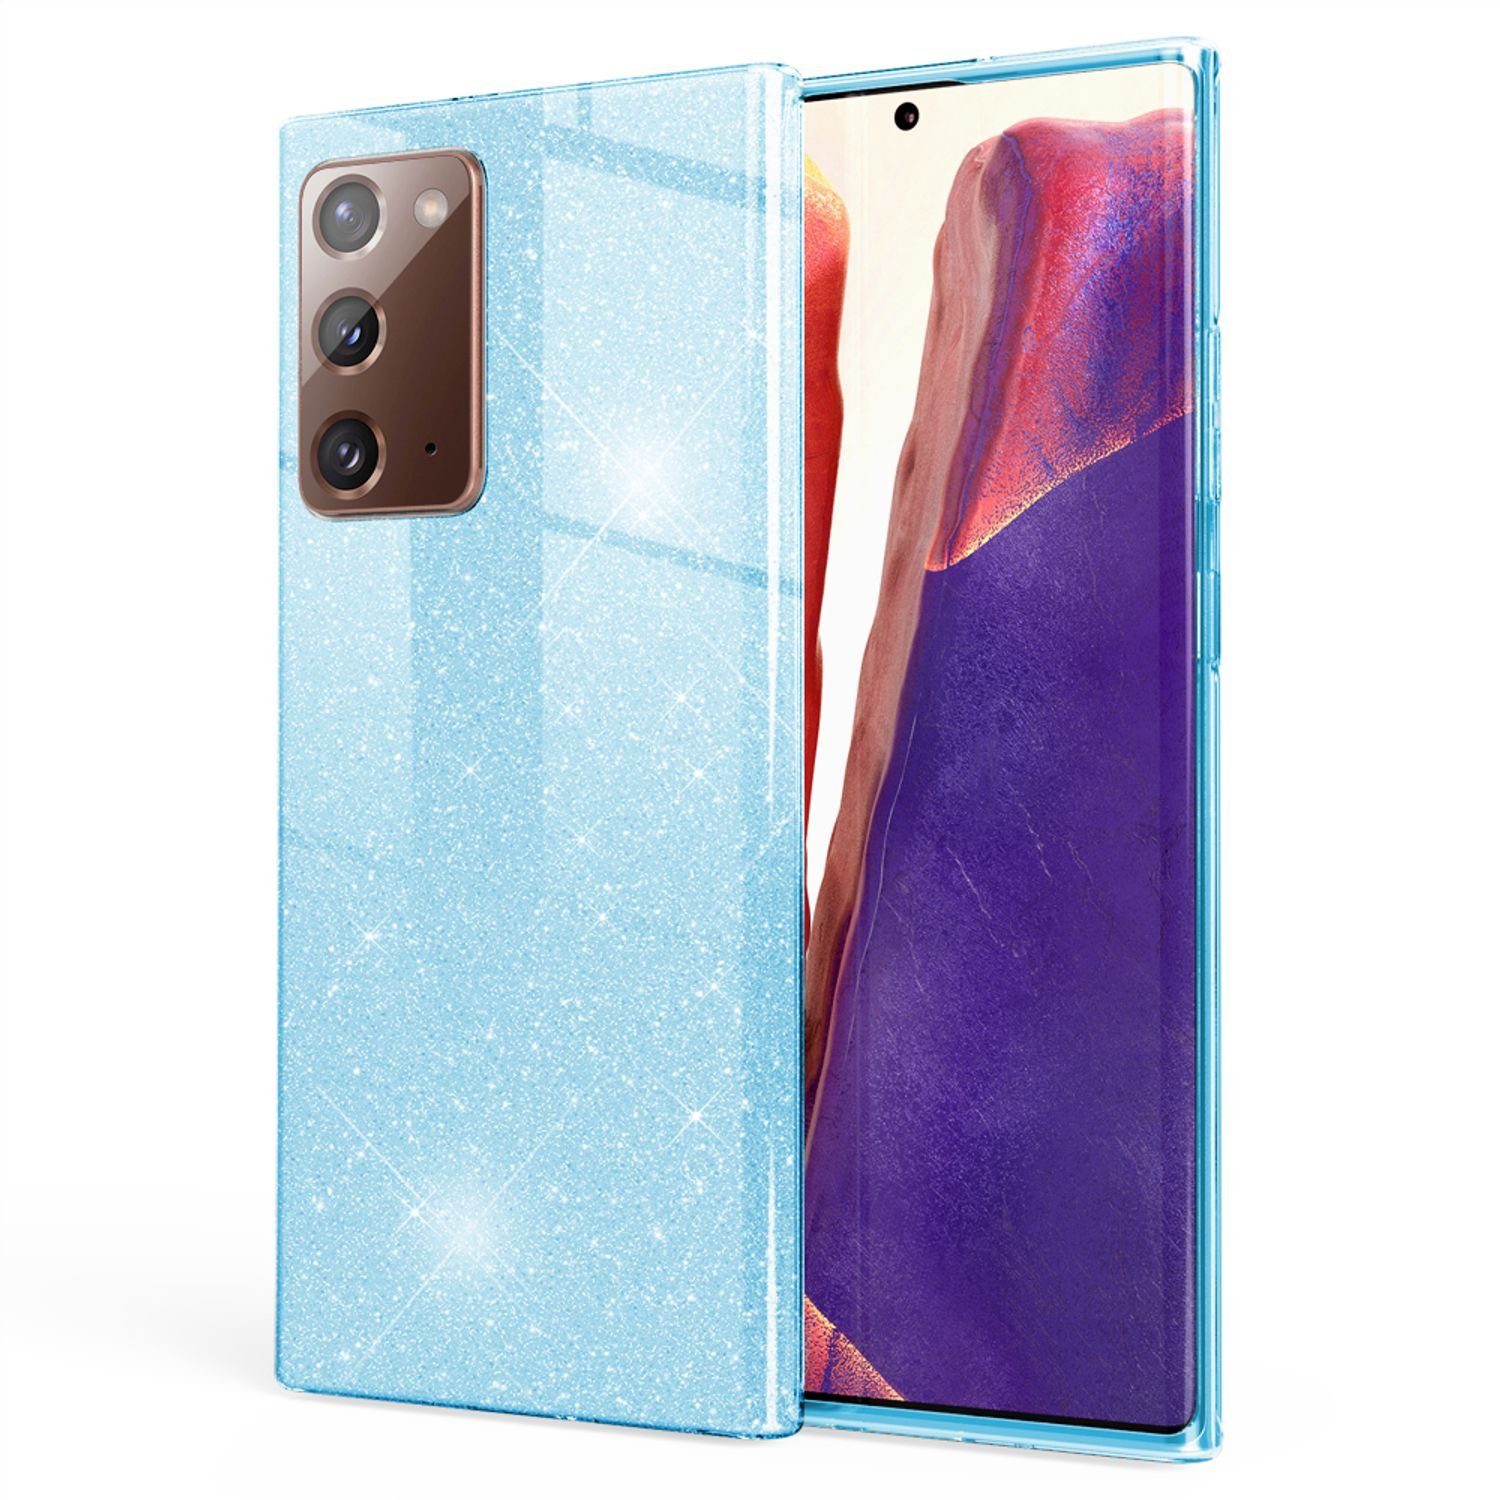 Nalia Handyhülle Samsung Galaxy Note 20, Glitzer Silikon Hülle / Erhöhte  Schutzwirkung durch verstärkte Innenseite / Glitter Cover /